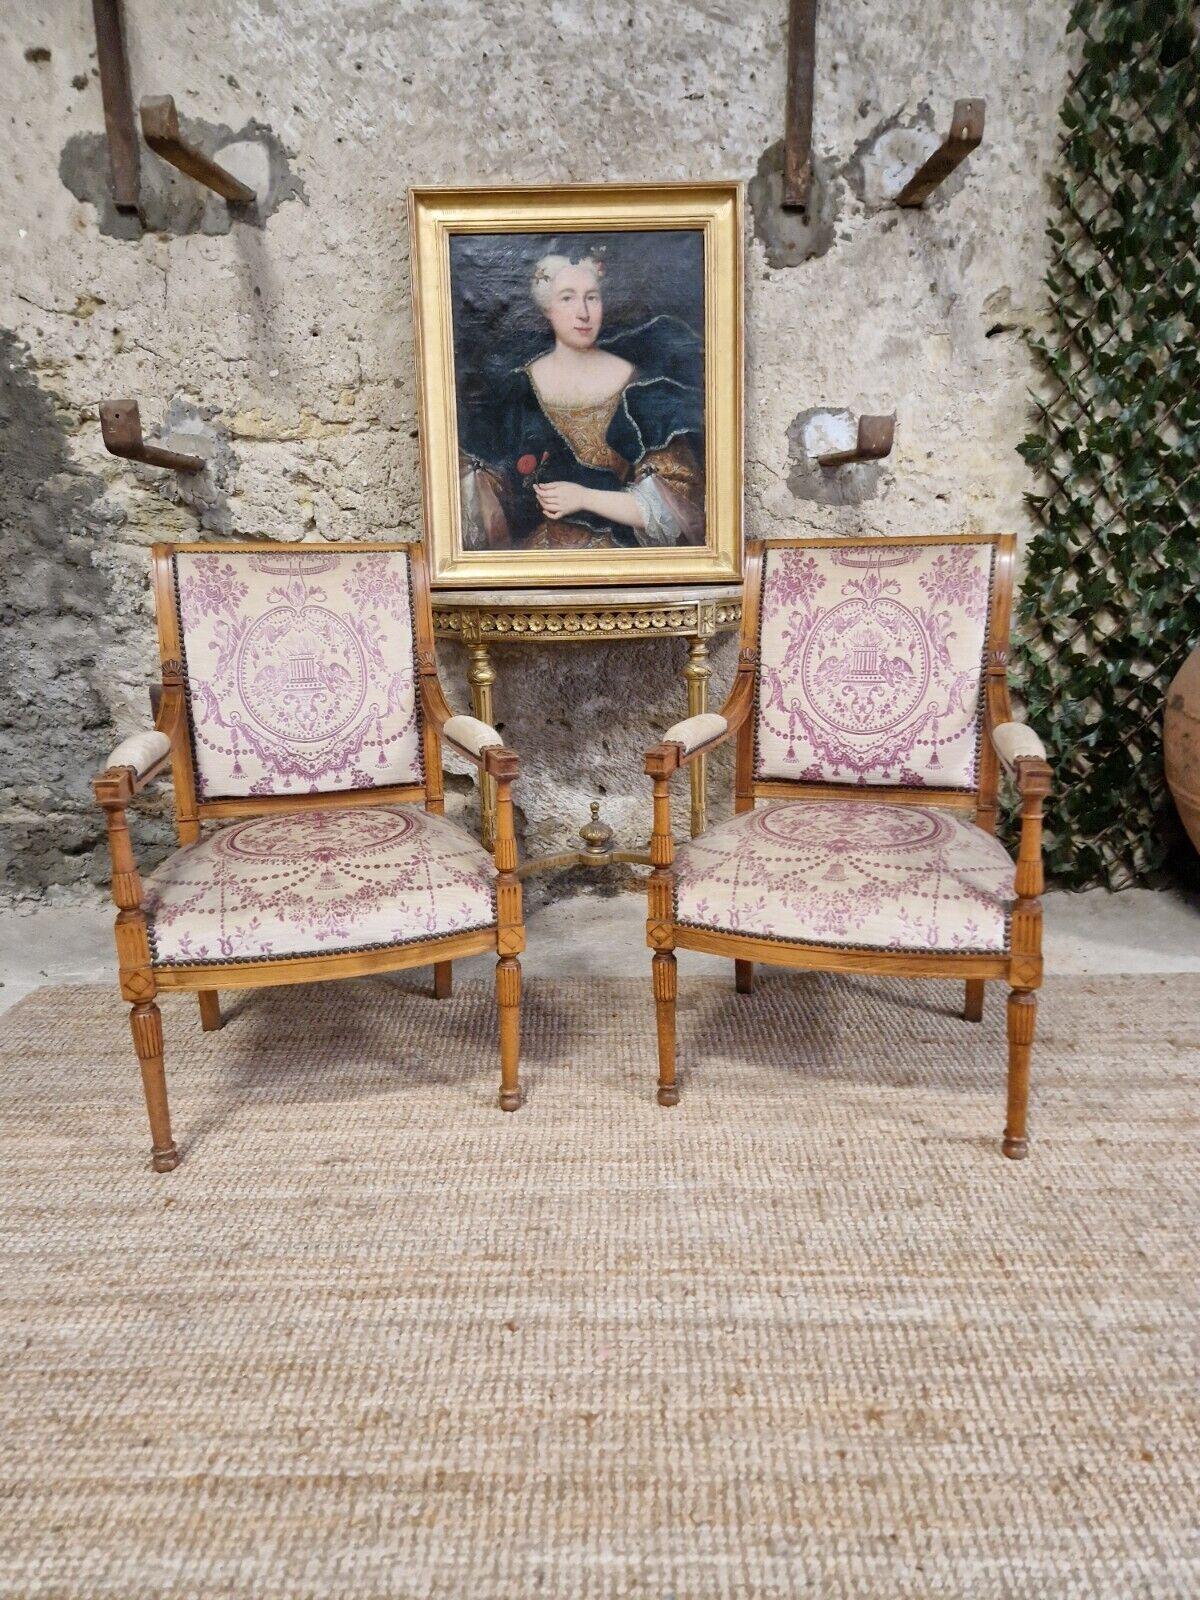 
Verbessern Sie den luxuriösen Charme Ihres Zuhauses mit diesem atemberaubenden Paar antiker französischer Sessel im Directoire-Stil. Der prächtige Rahmen aus braunem Buchenholz und das französisch inspirierte Design versetzen Sie in das Frankreich